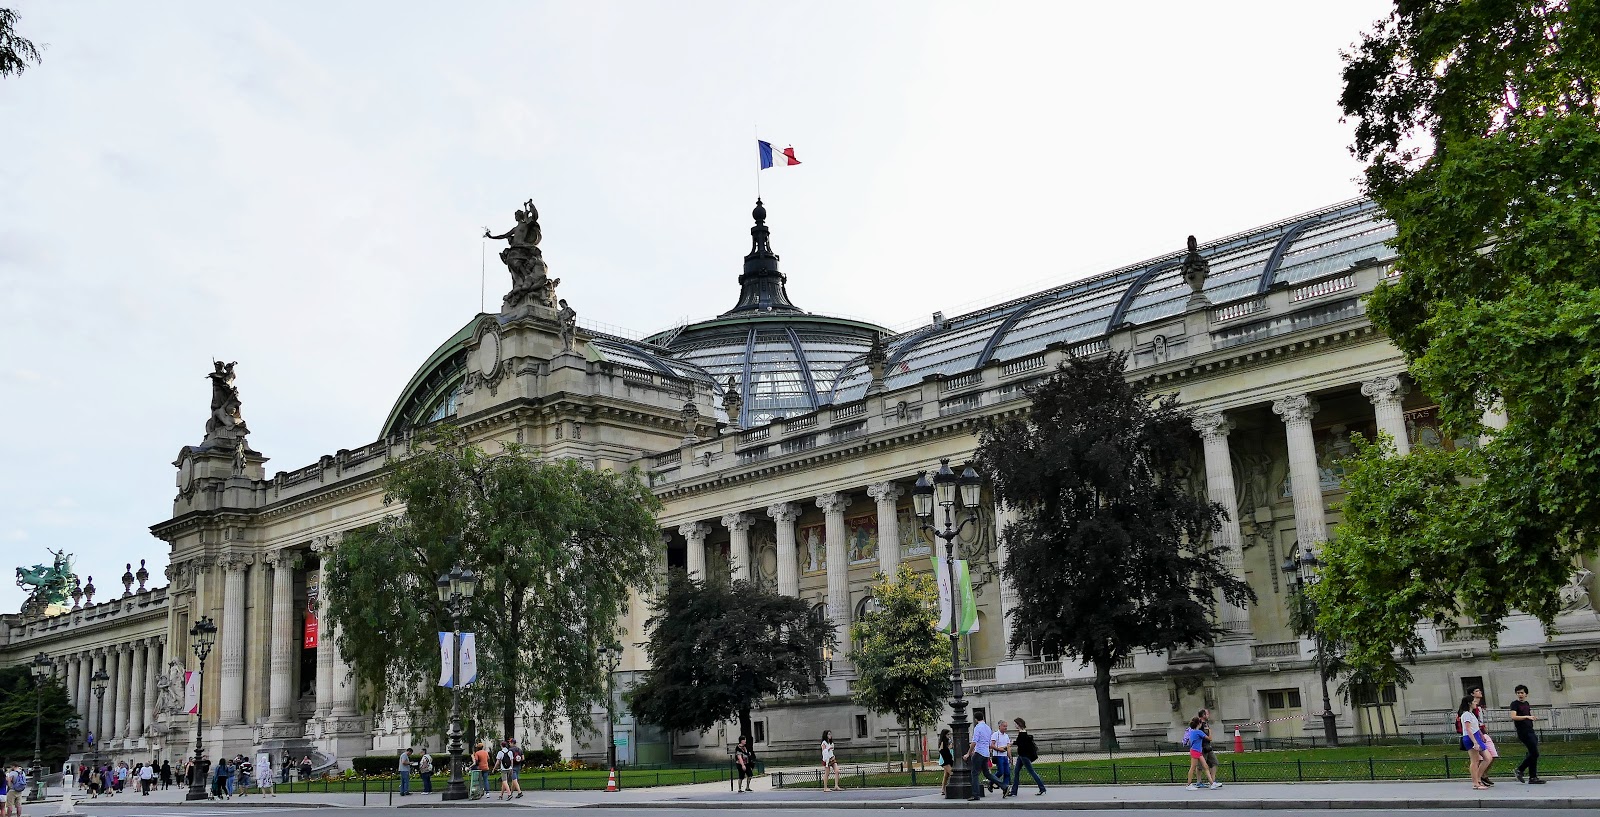 j'ai vu, j'ai photographié, je partage: Le Grand Palais Paris